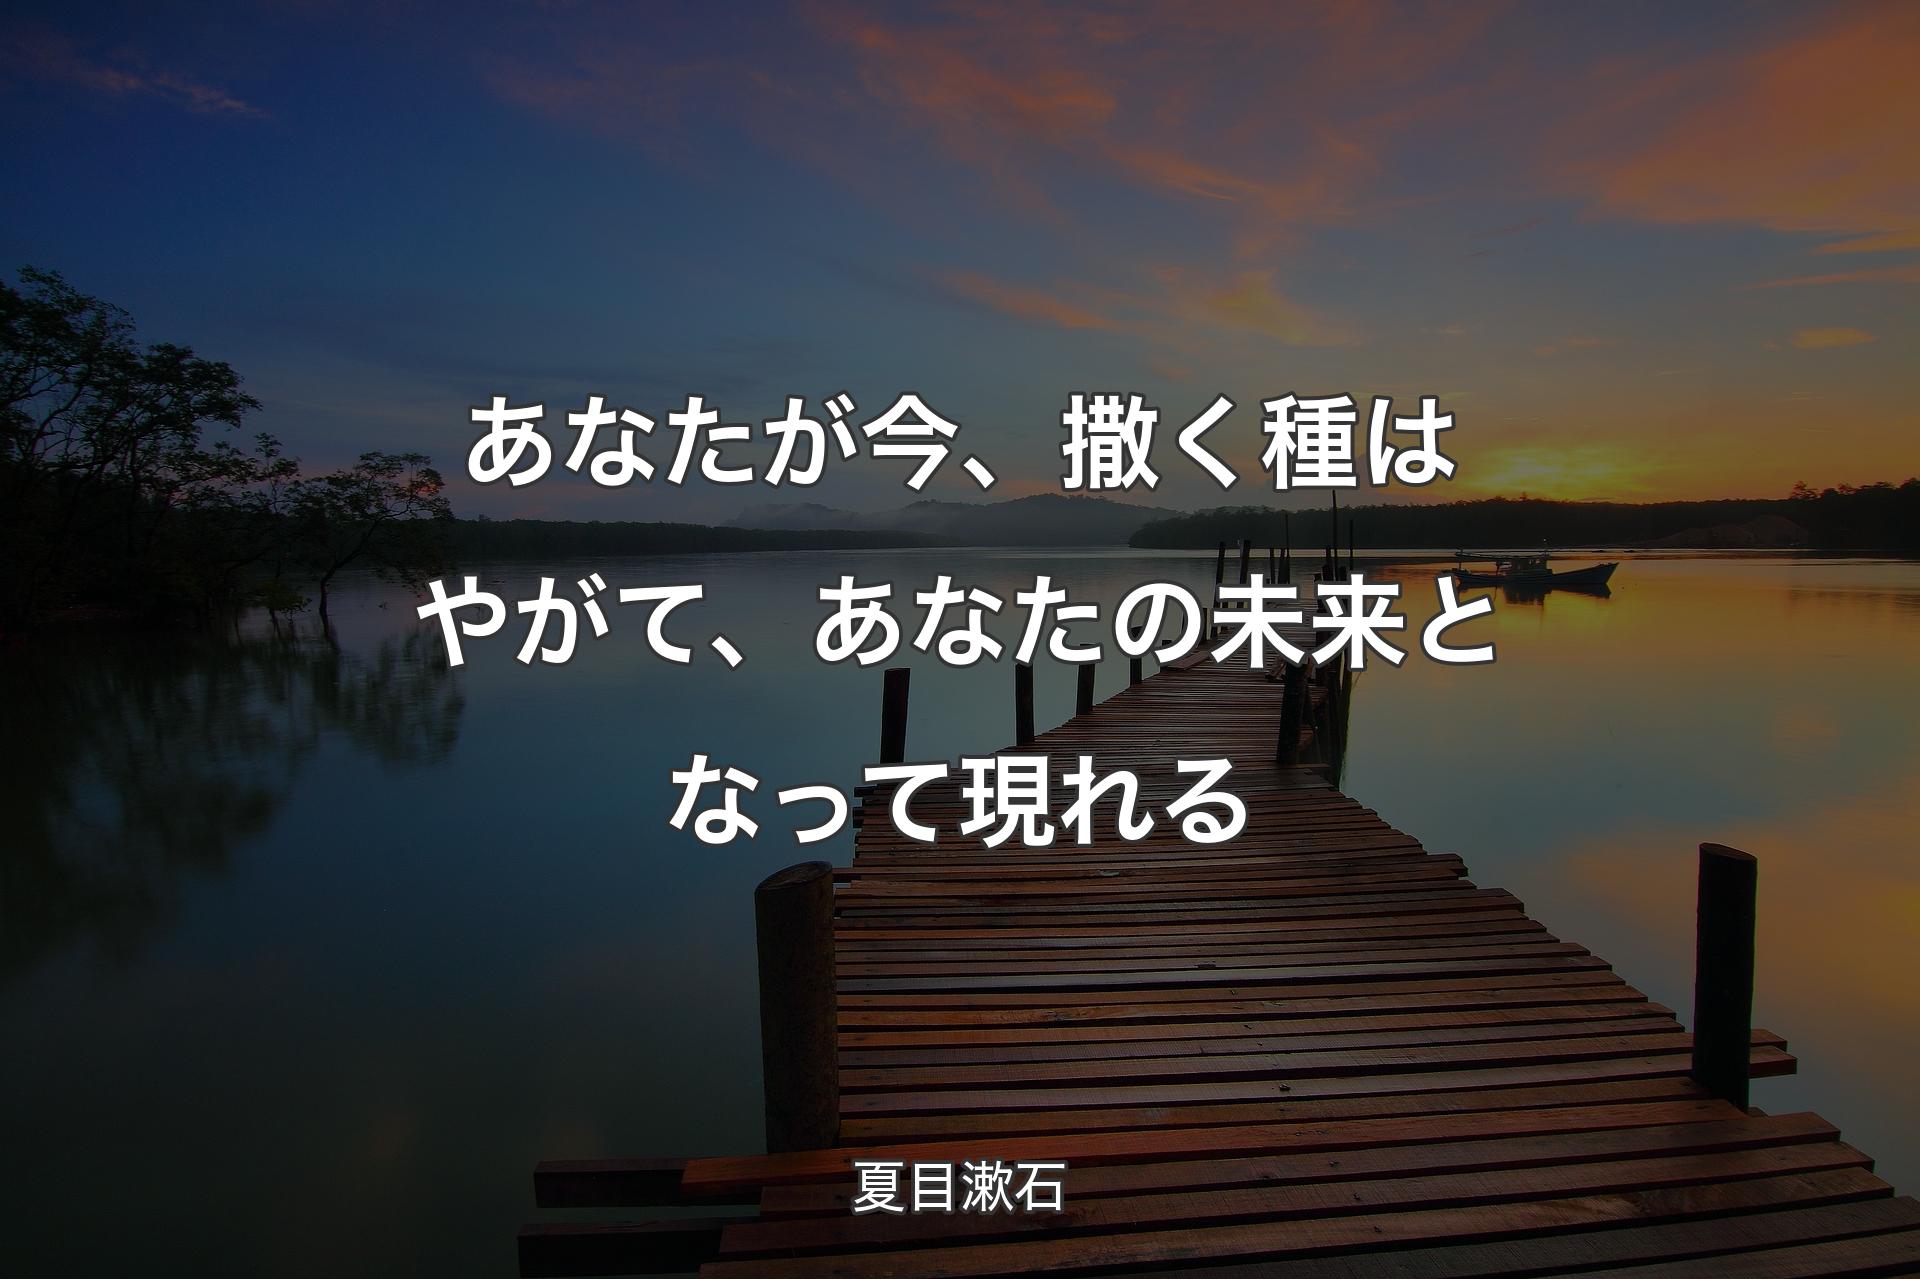 あなたが今、撒く種はやがて、あなたの未来となって現れる - 夏目漱石